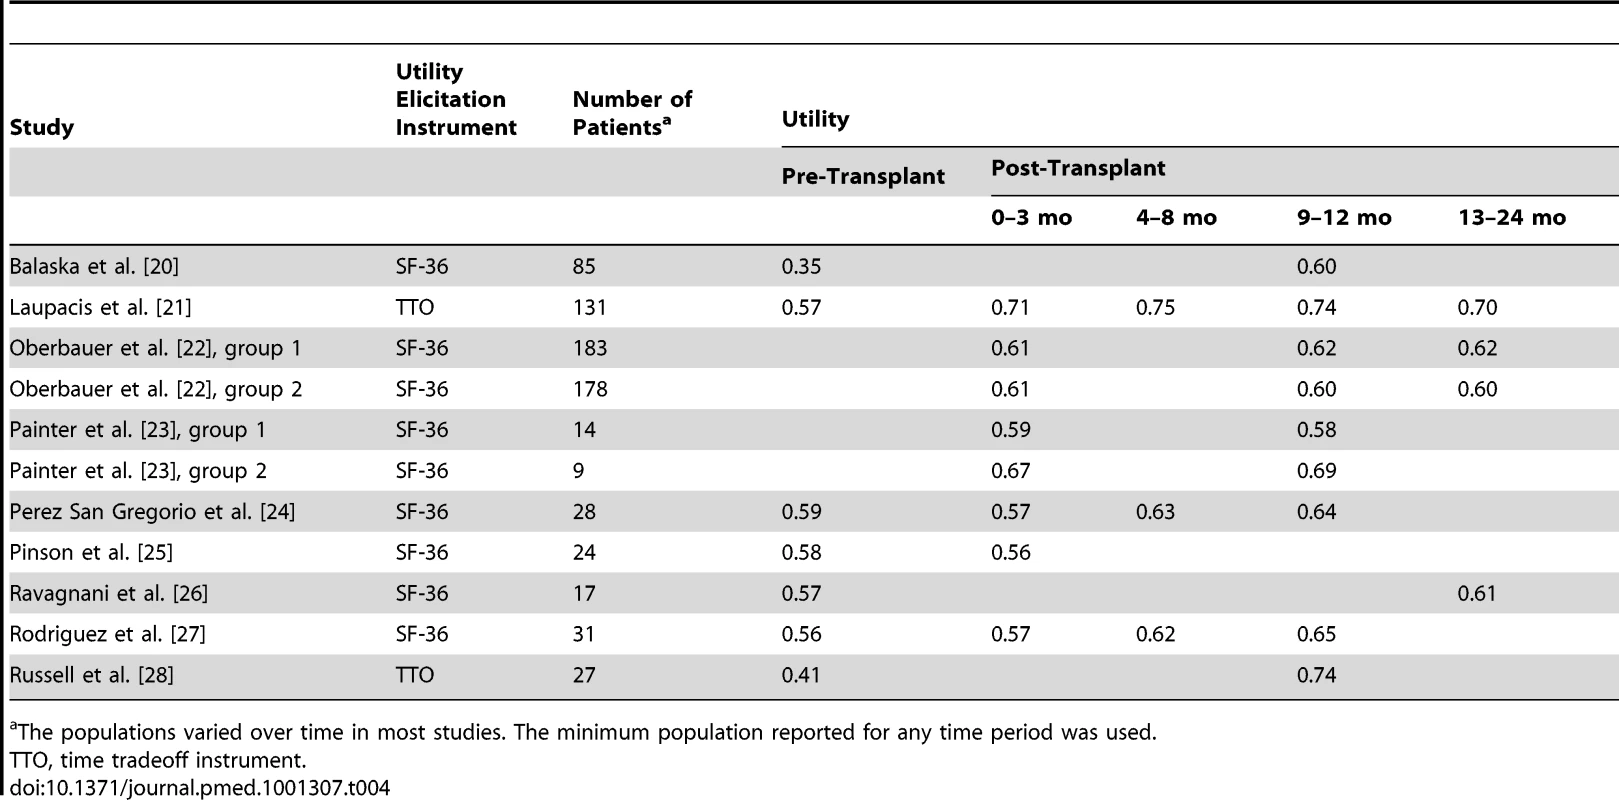 Longitudinal data for kidney transplant utility-based quality of life.